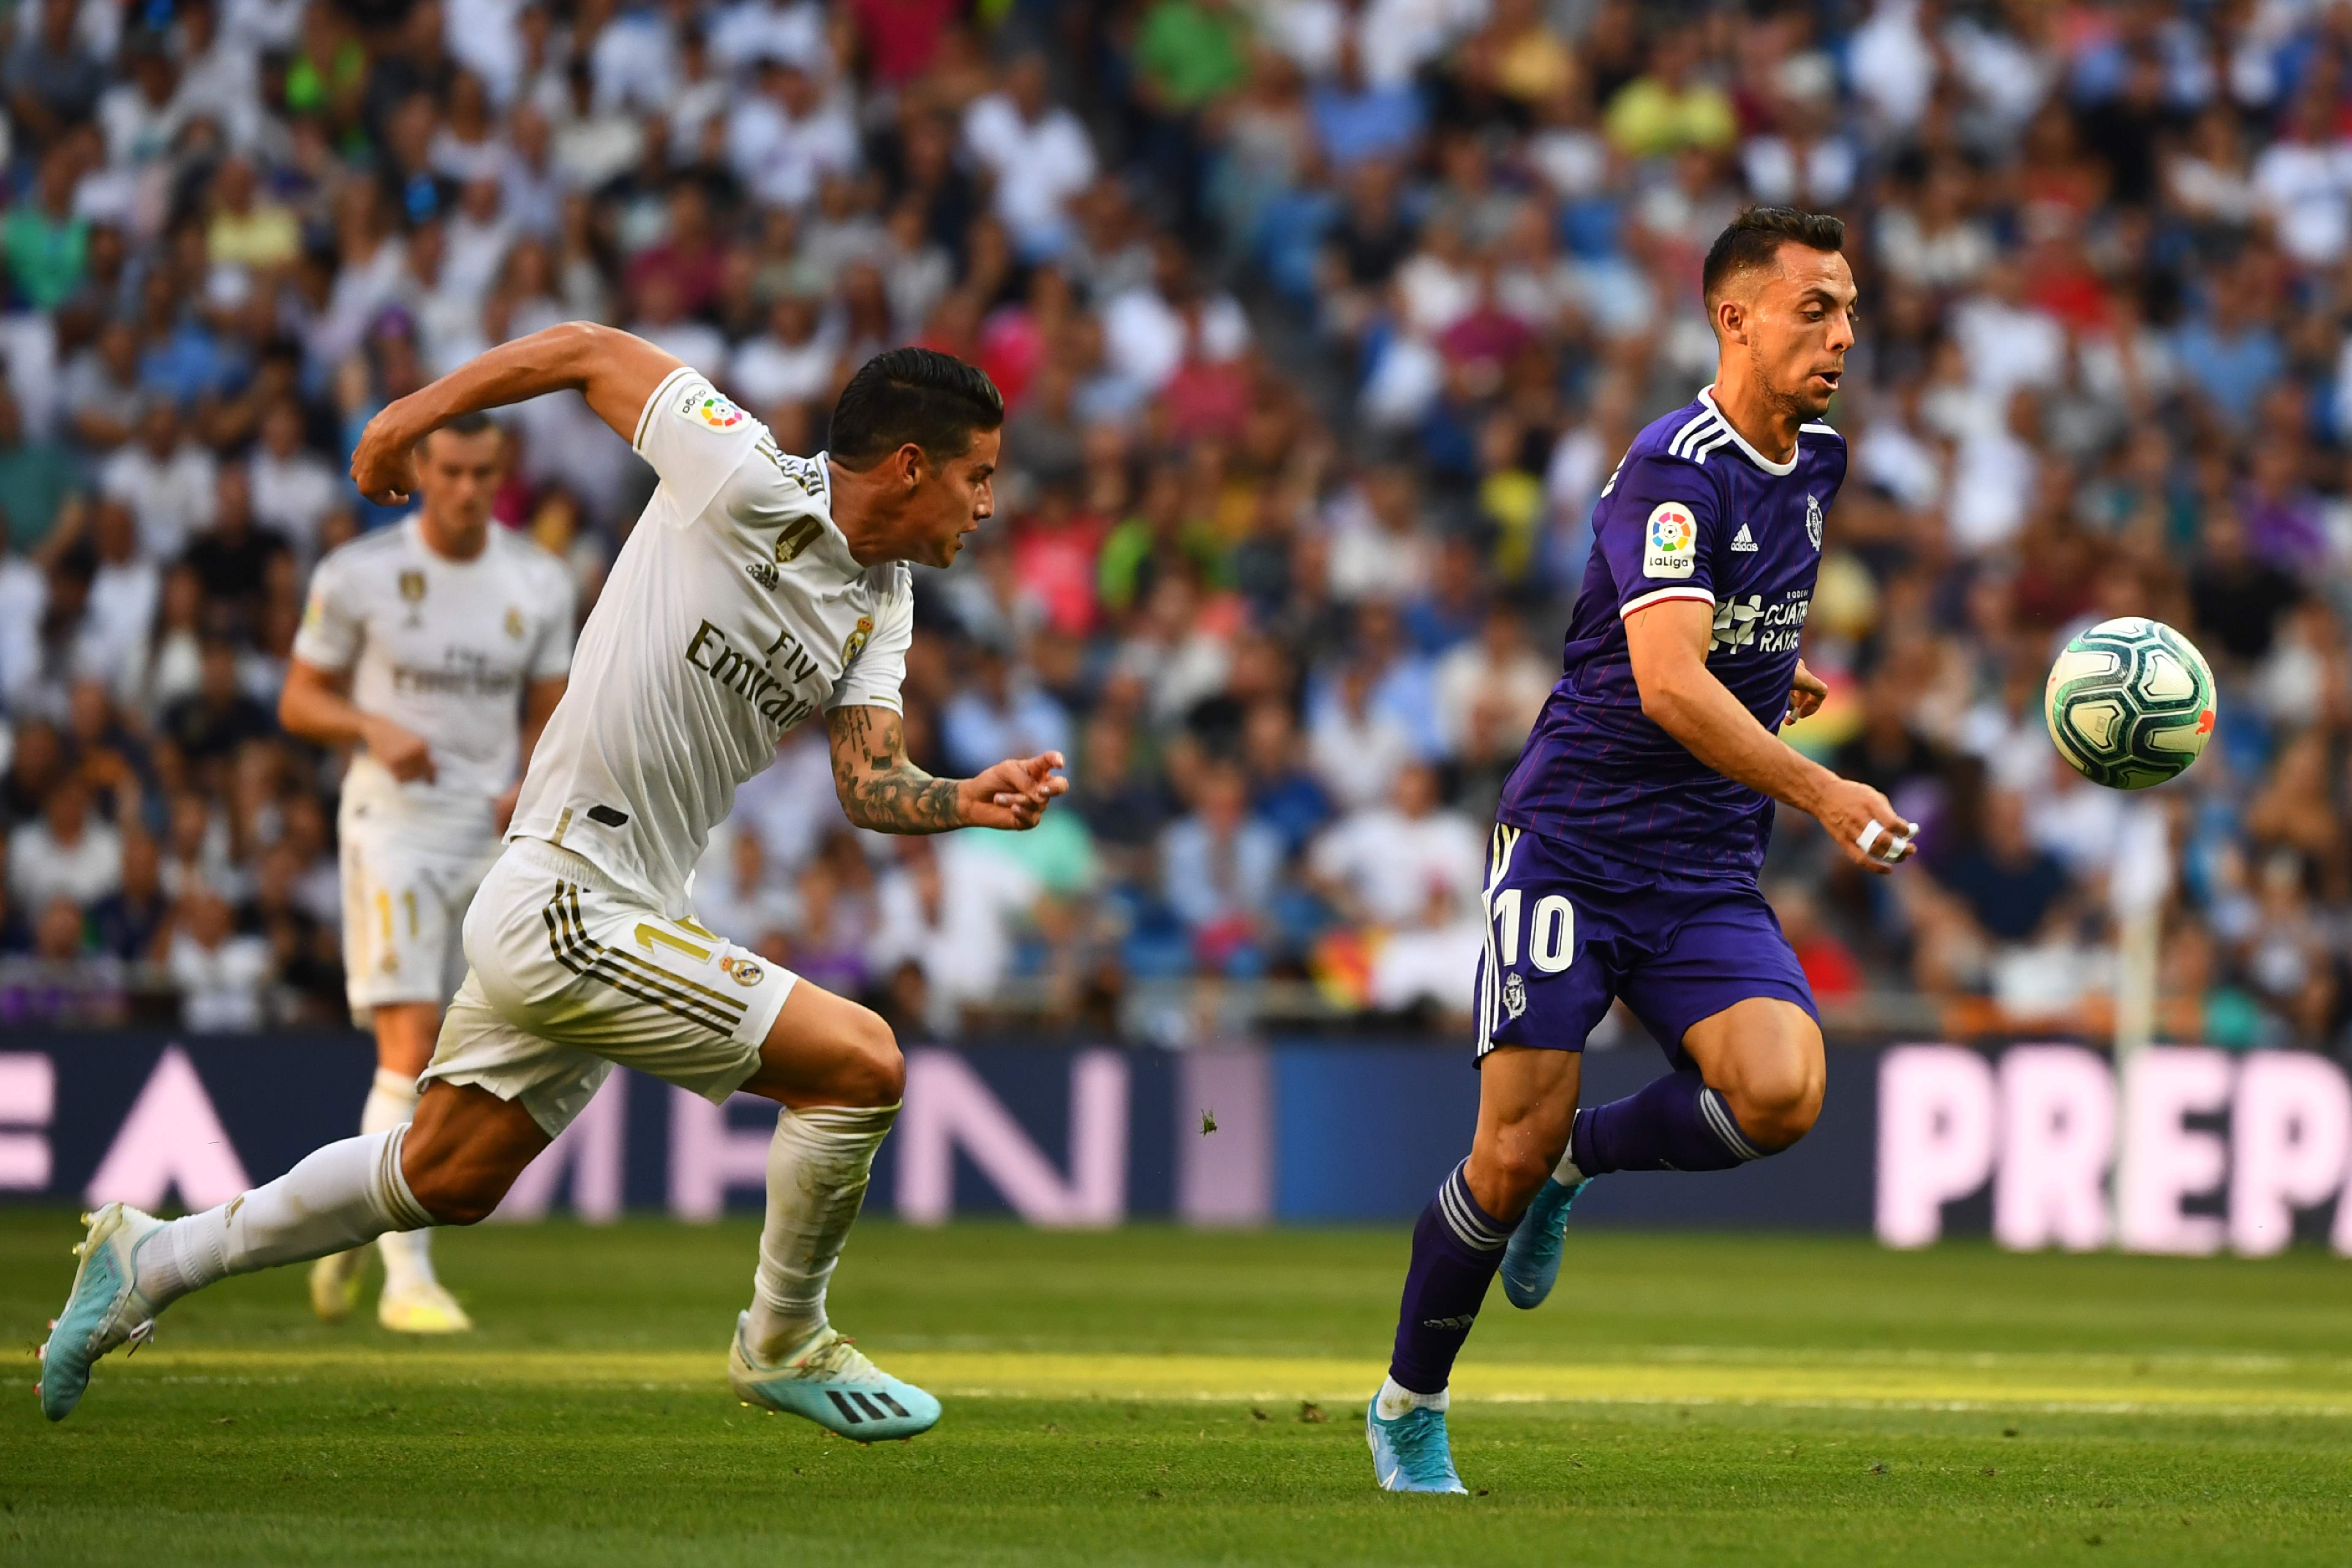 EN DIRECTO | Real Madrid vs Valladolid – Prensa Libre5568 x 3712